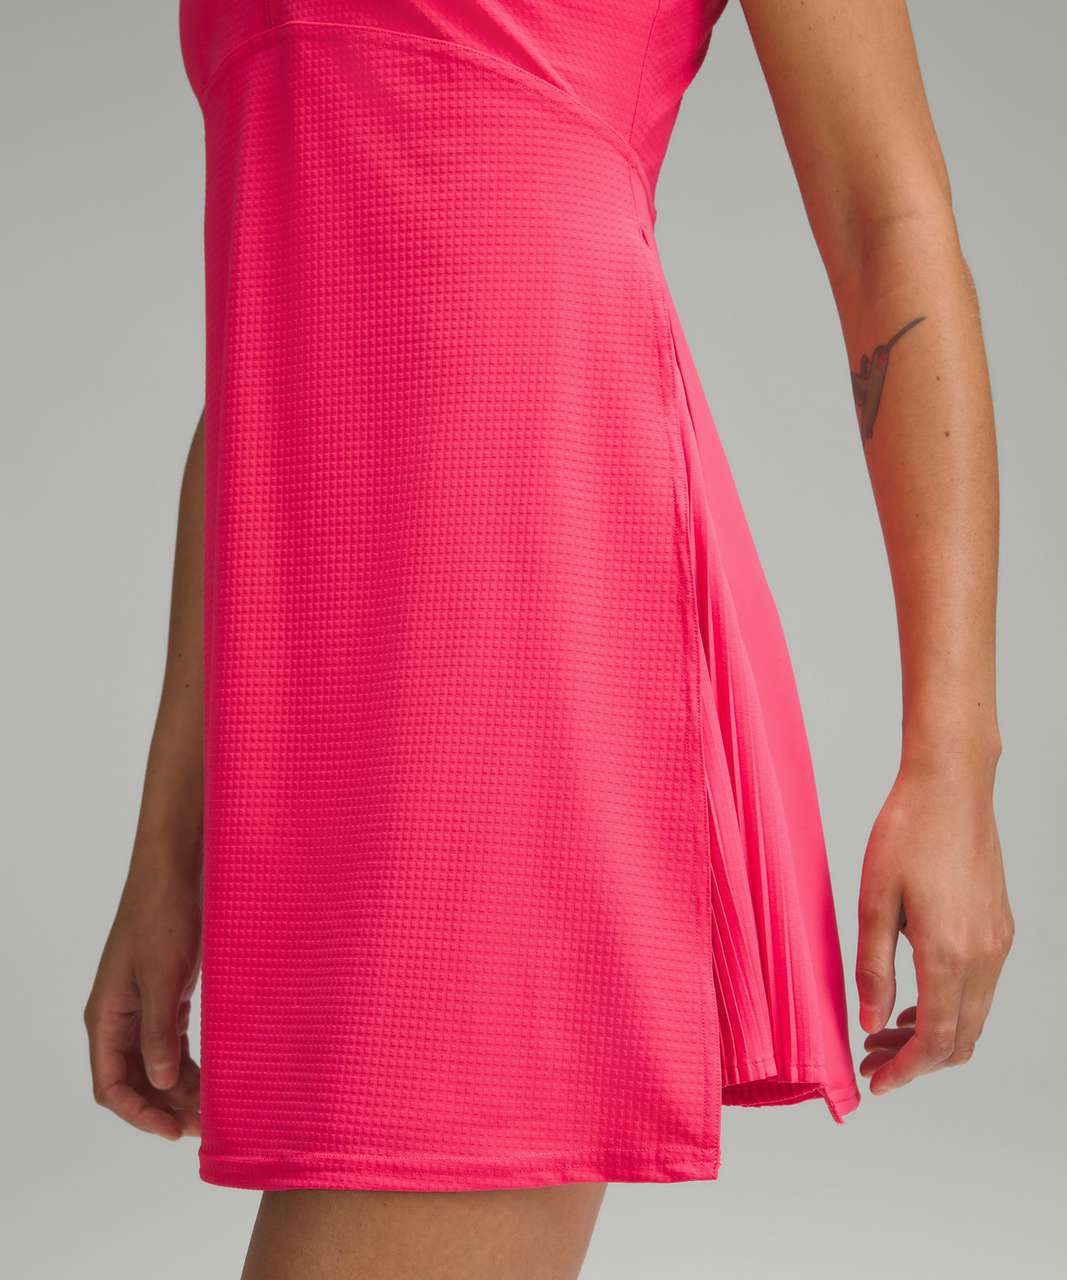 Lululemon athletica Grid-Texture Sleeveless Tennis Dress